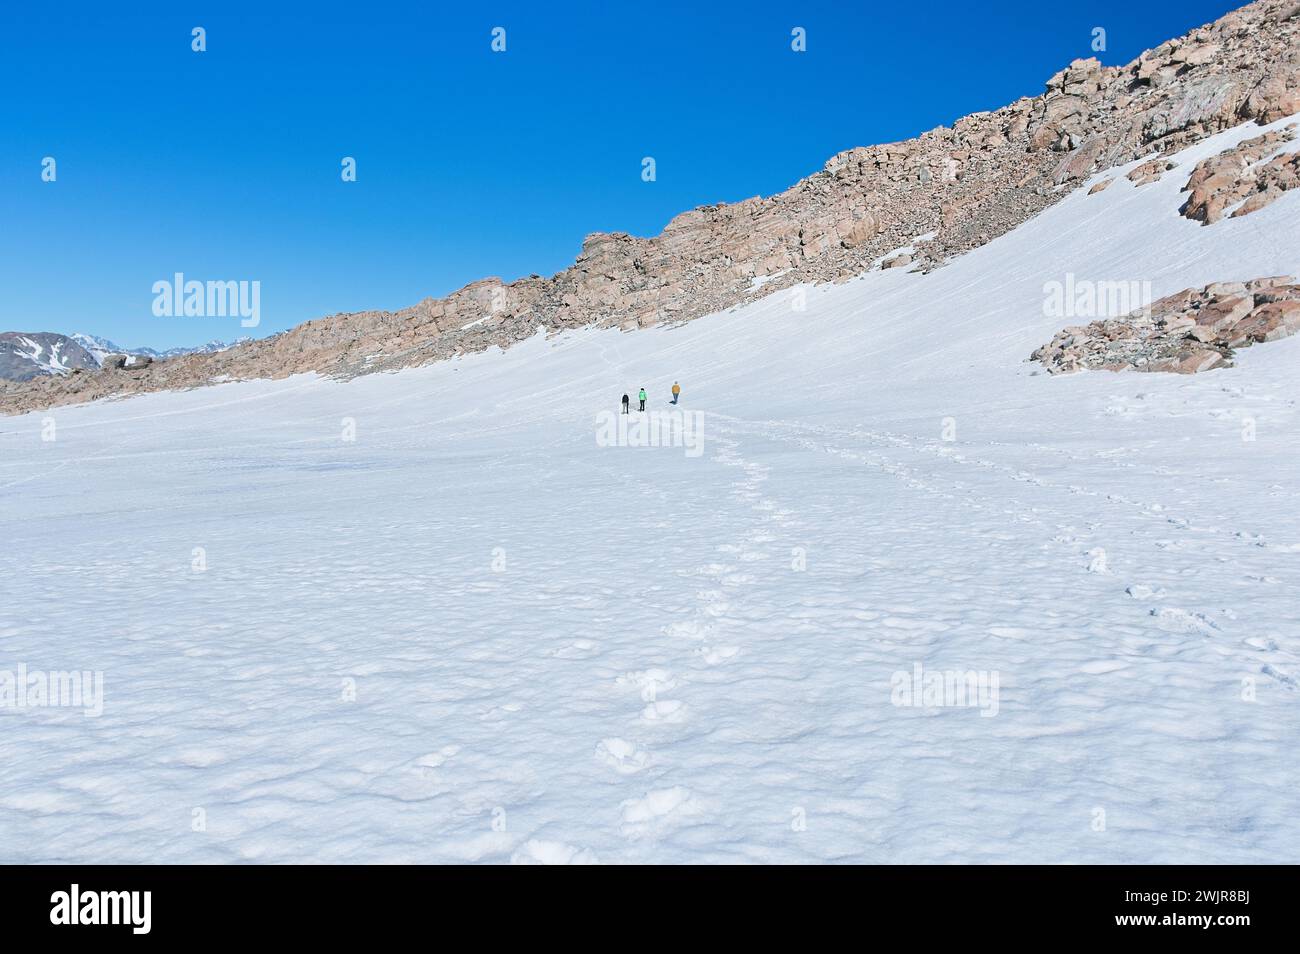 Eine Gruppe von Menschen wird durch eine schneebedeckte Landschaft, umgeben von Gletscherlandschaften und dem eisigen Winterhimmel, beobachtet Stockfoto